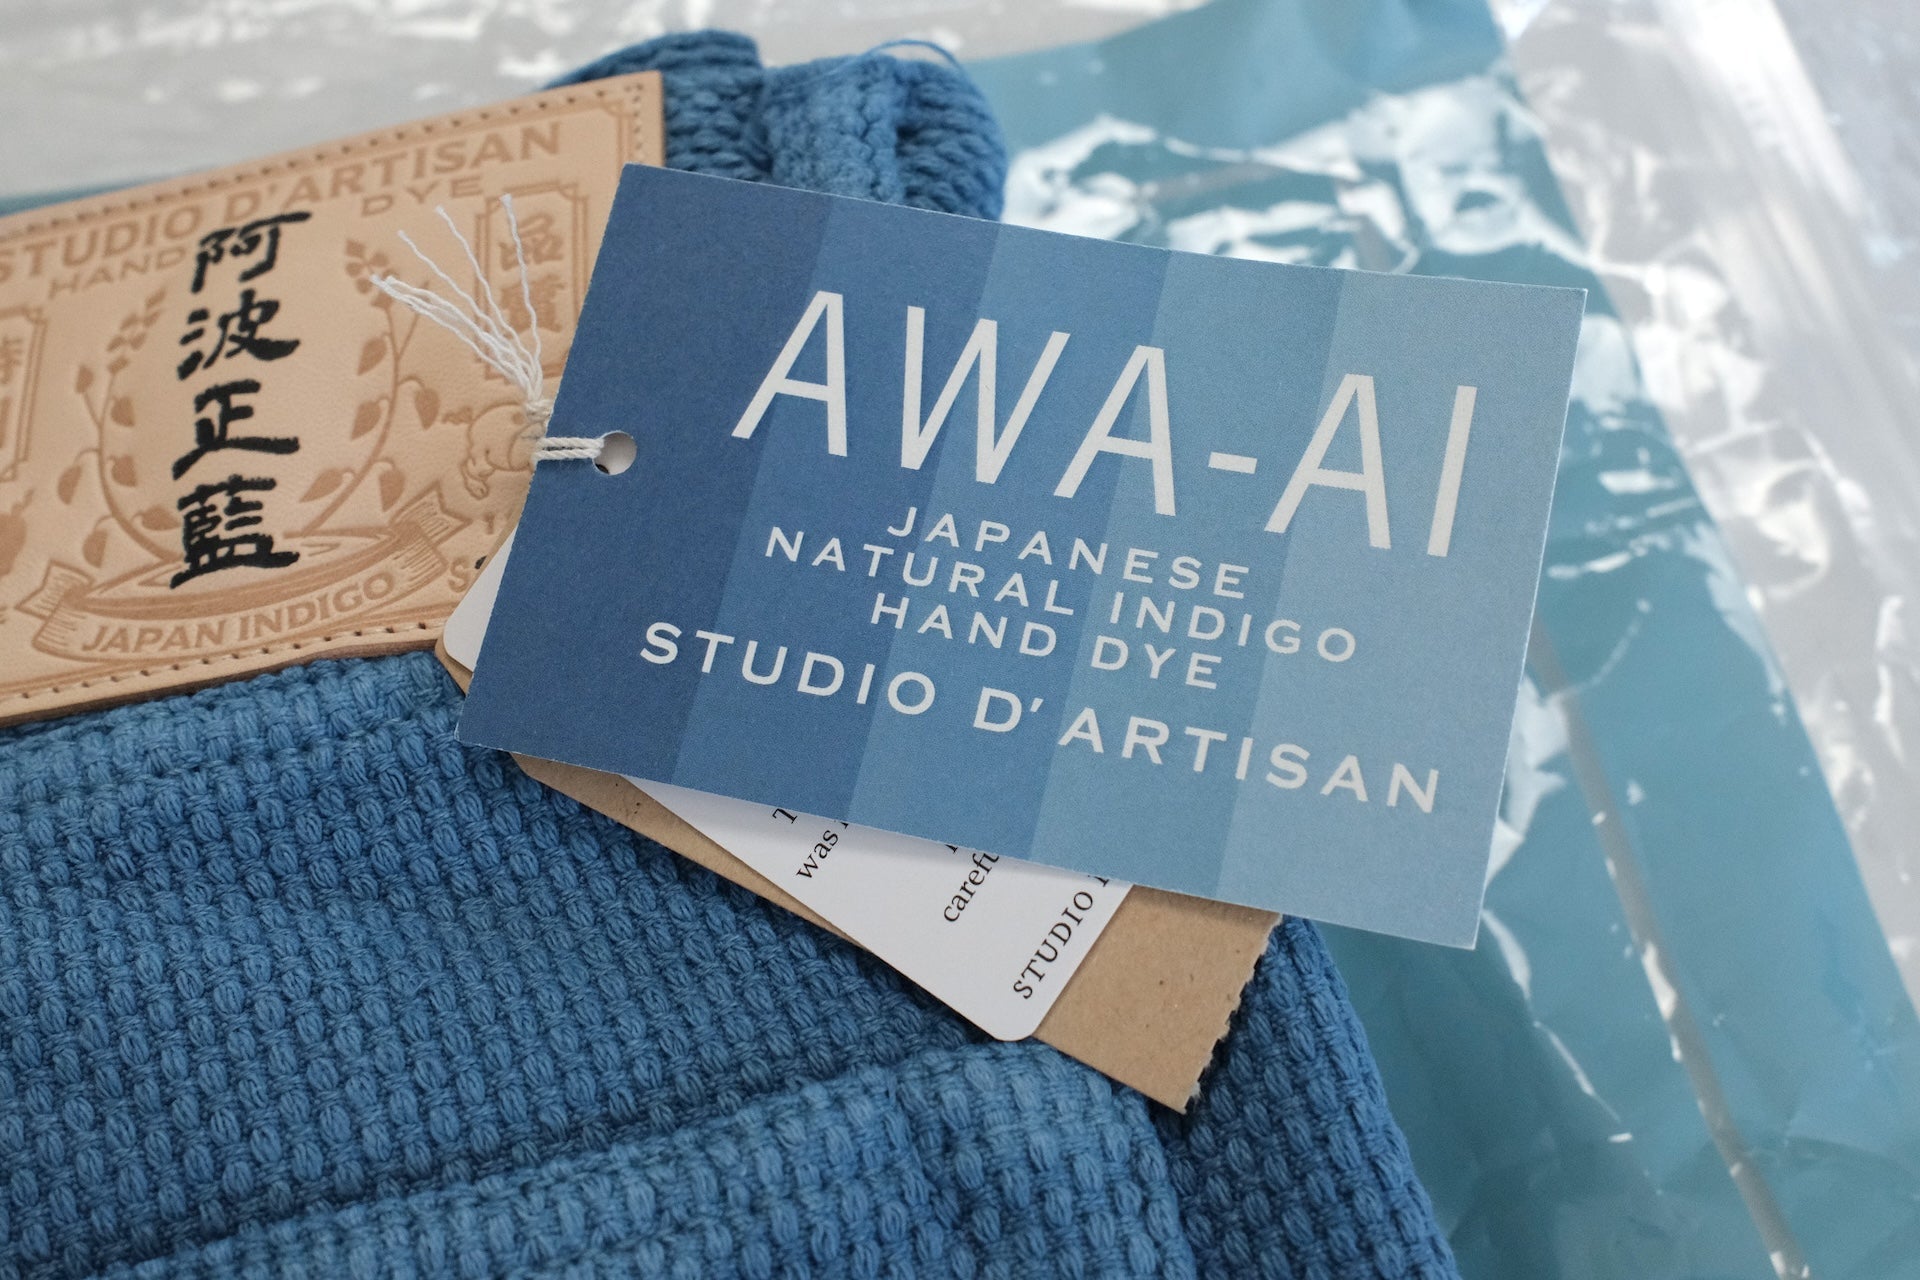 Studio D'Artisan 12.5oz "Awa-Ai" Natural Indigo Dyed Sashiko Trousers (Relaxed Tapered Fit)